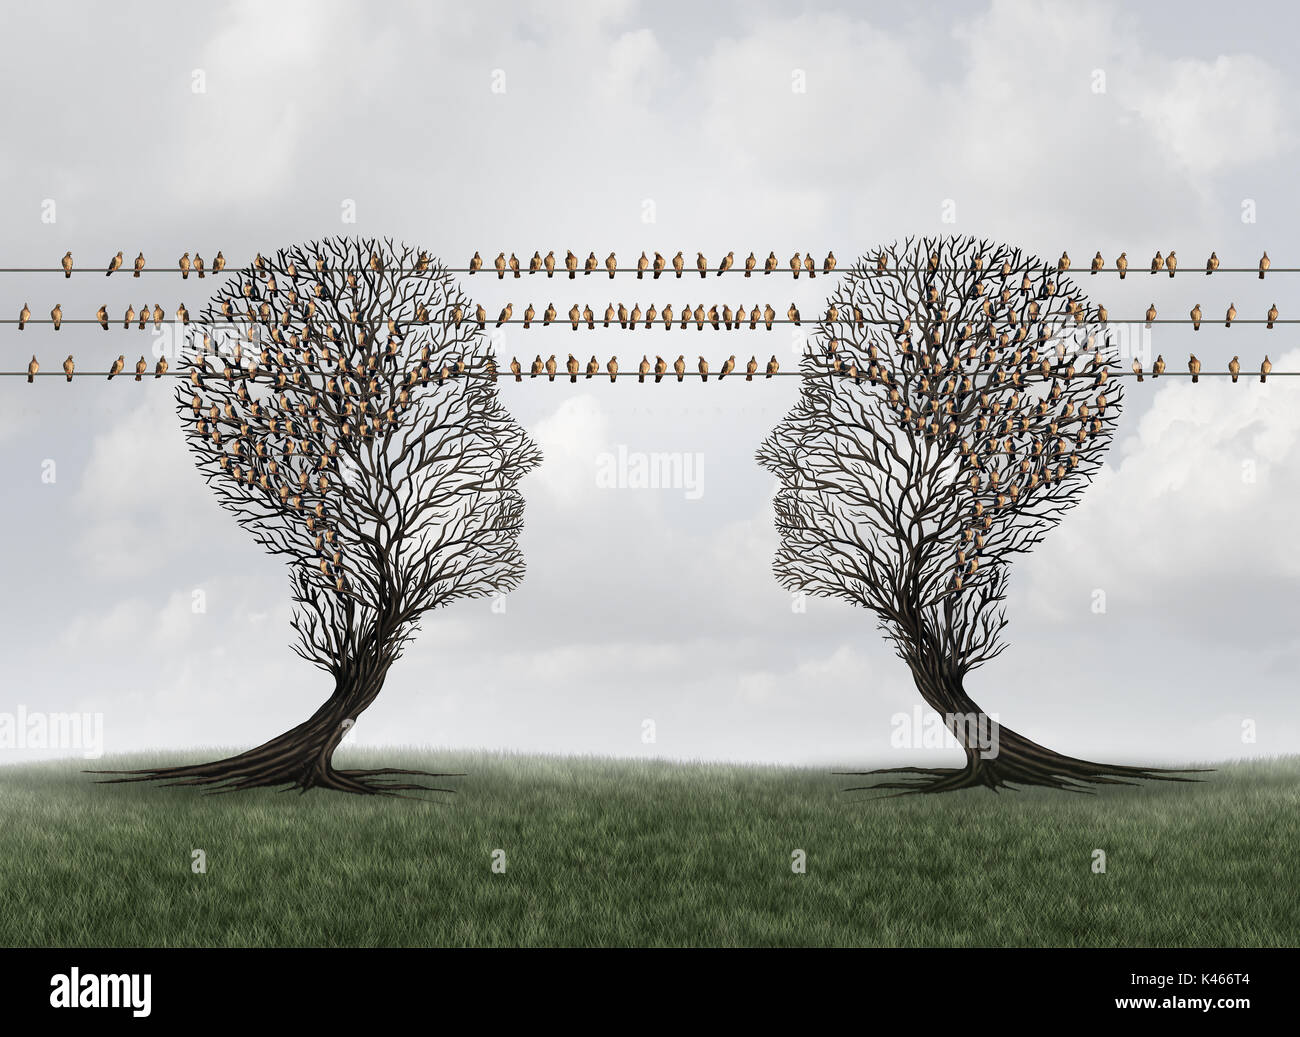 Verbindung Kommunikationsnetz wie Bäume als menschliche Köpfe mit Vögeln auf Drähte als Bote Tauben als Internet angeschlossen werden, geprägt. Stockfoto